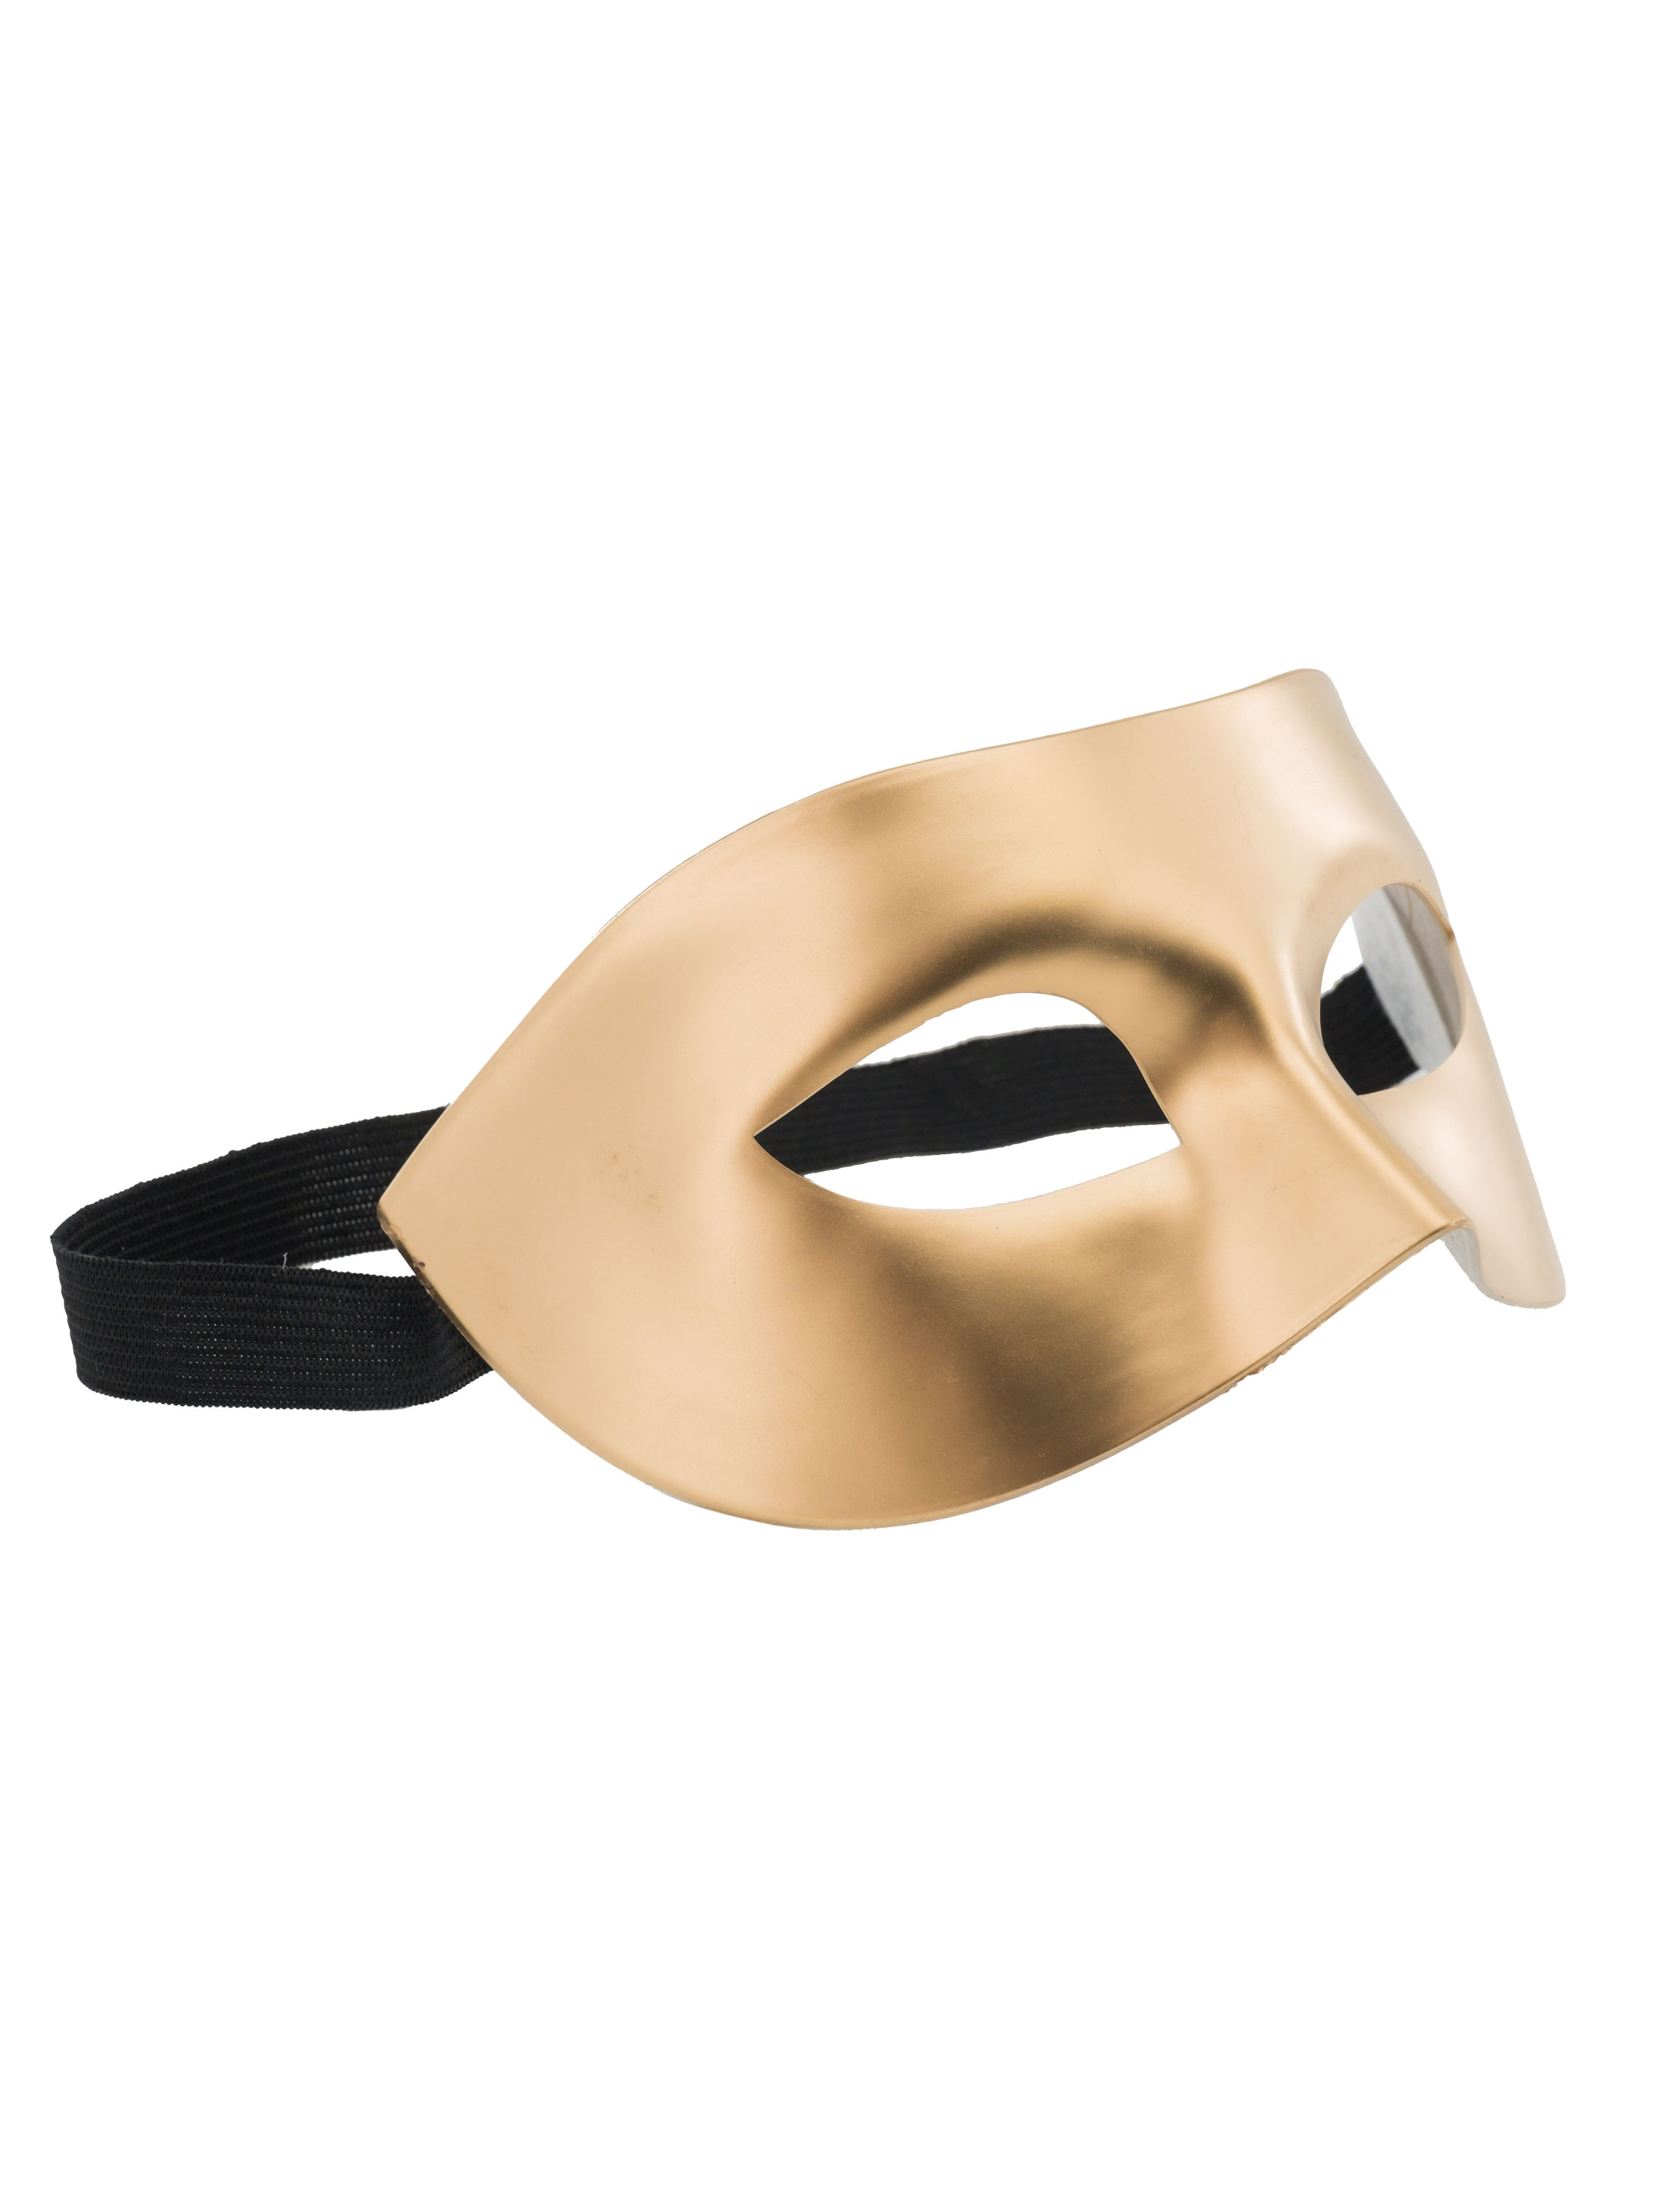 Maske gold